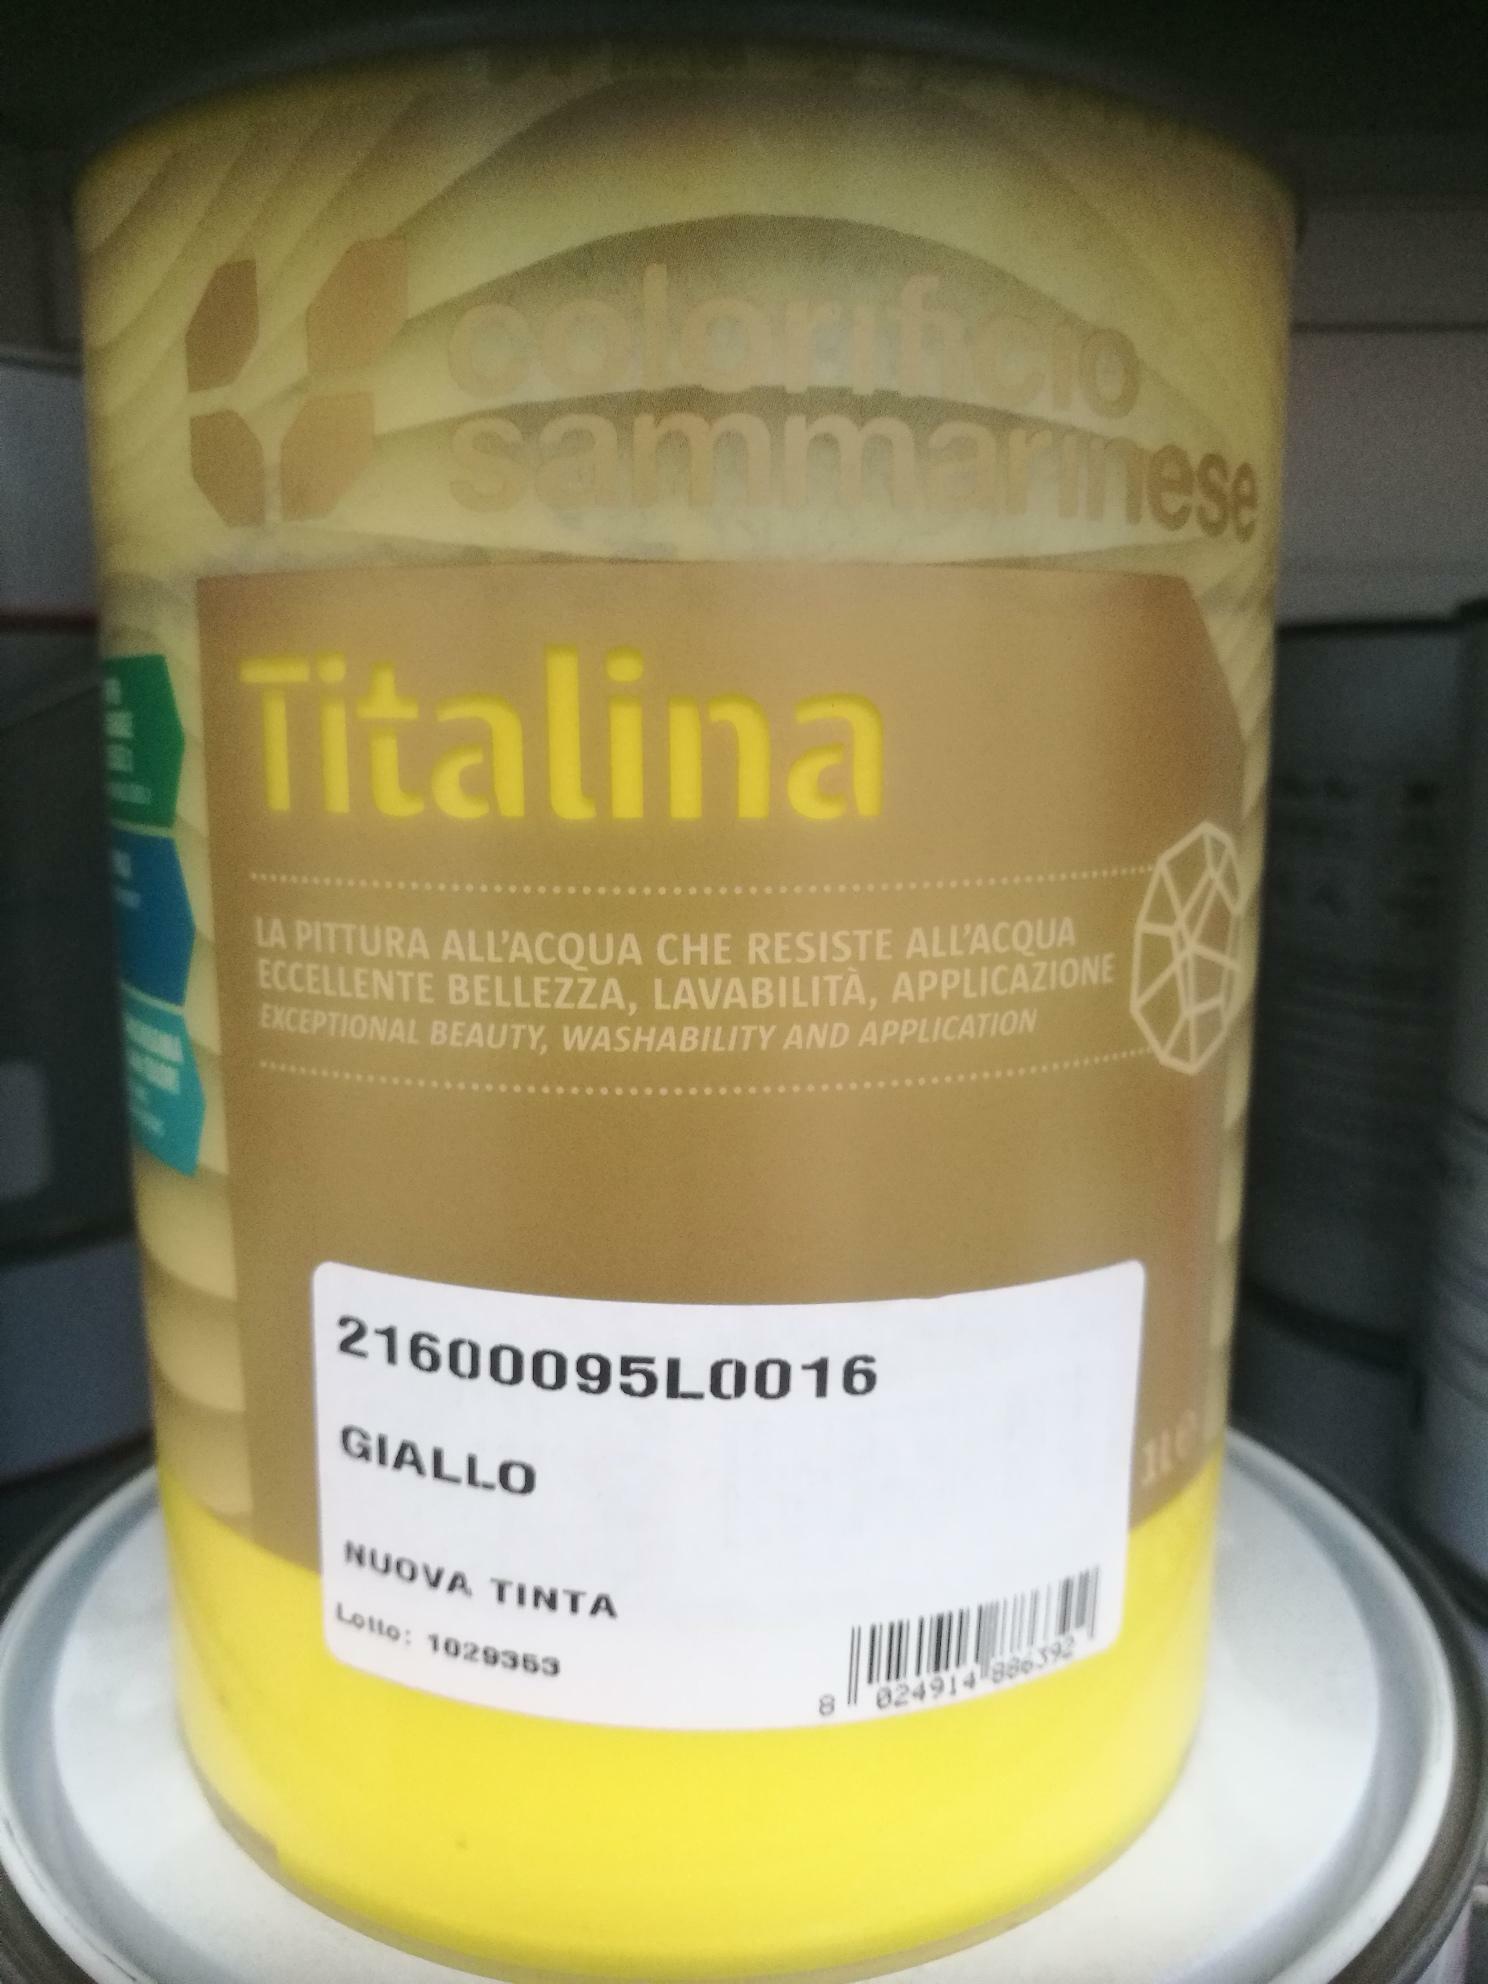 sammarinese sammarinese titalina giallo 1 lt idropittura superlavabile extra